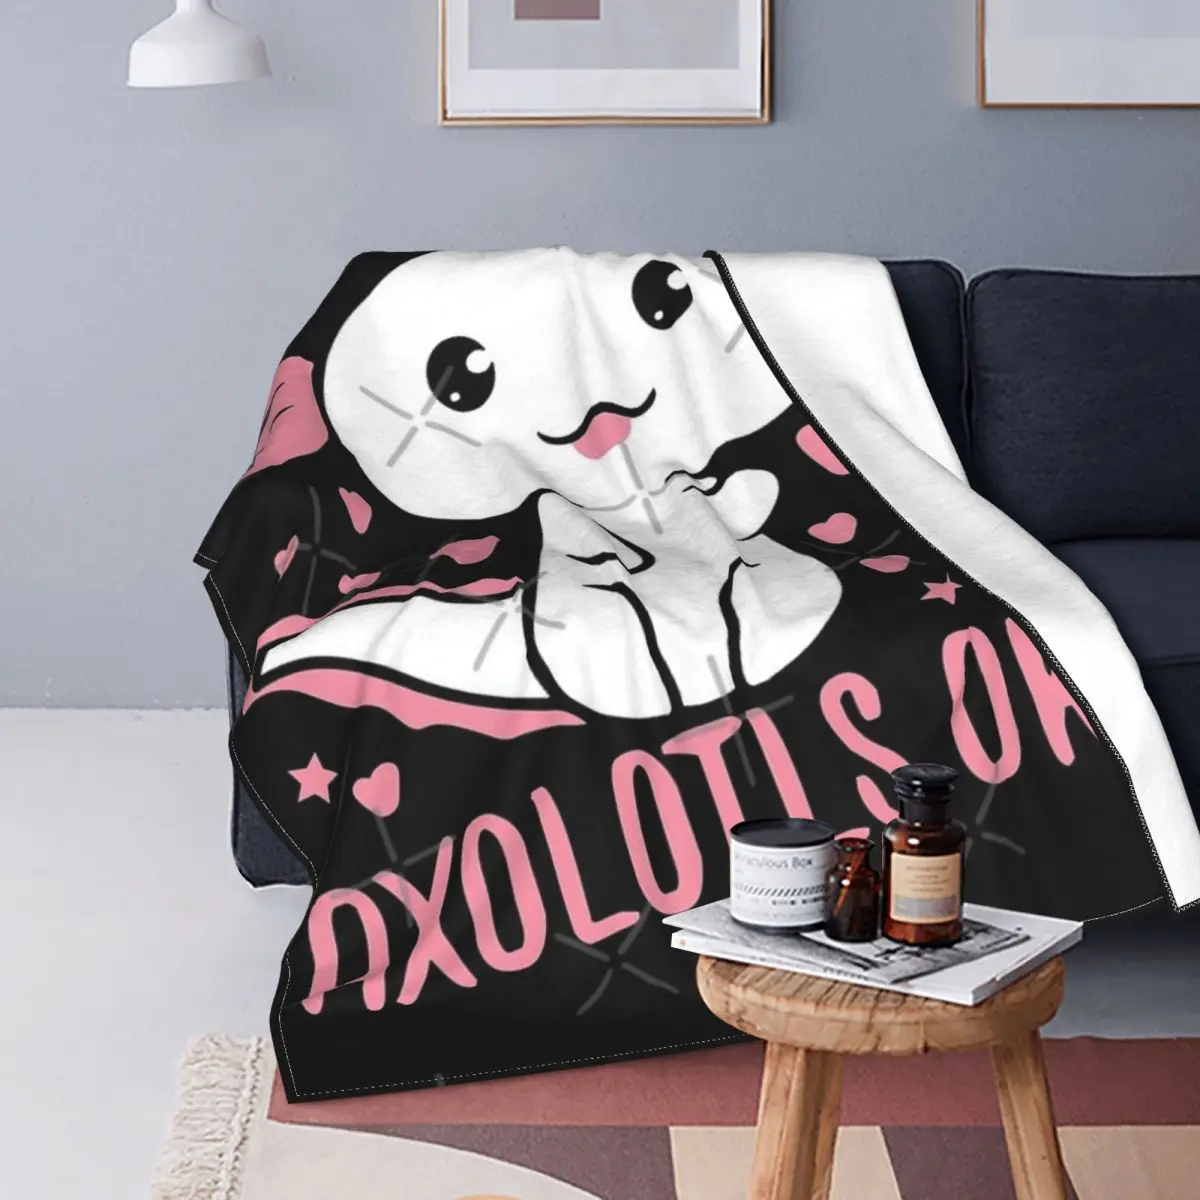 

Одеяло Axolotls, покрывало для кровати, плед, диван-кровать, пляжное одеяло, двойное одеяло, зимние покрывала для кровати